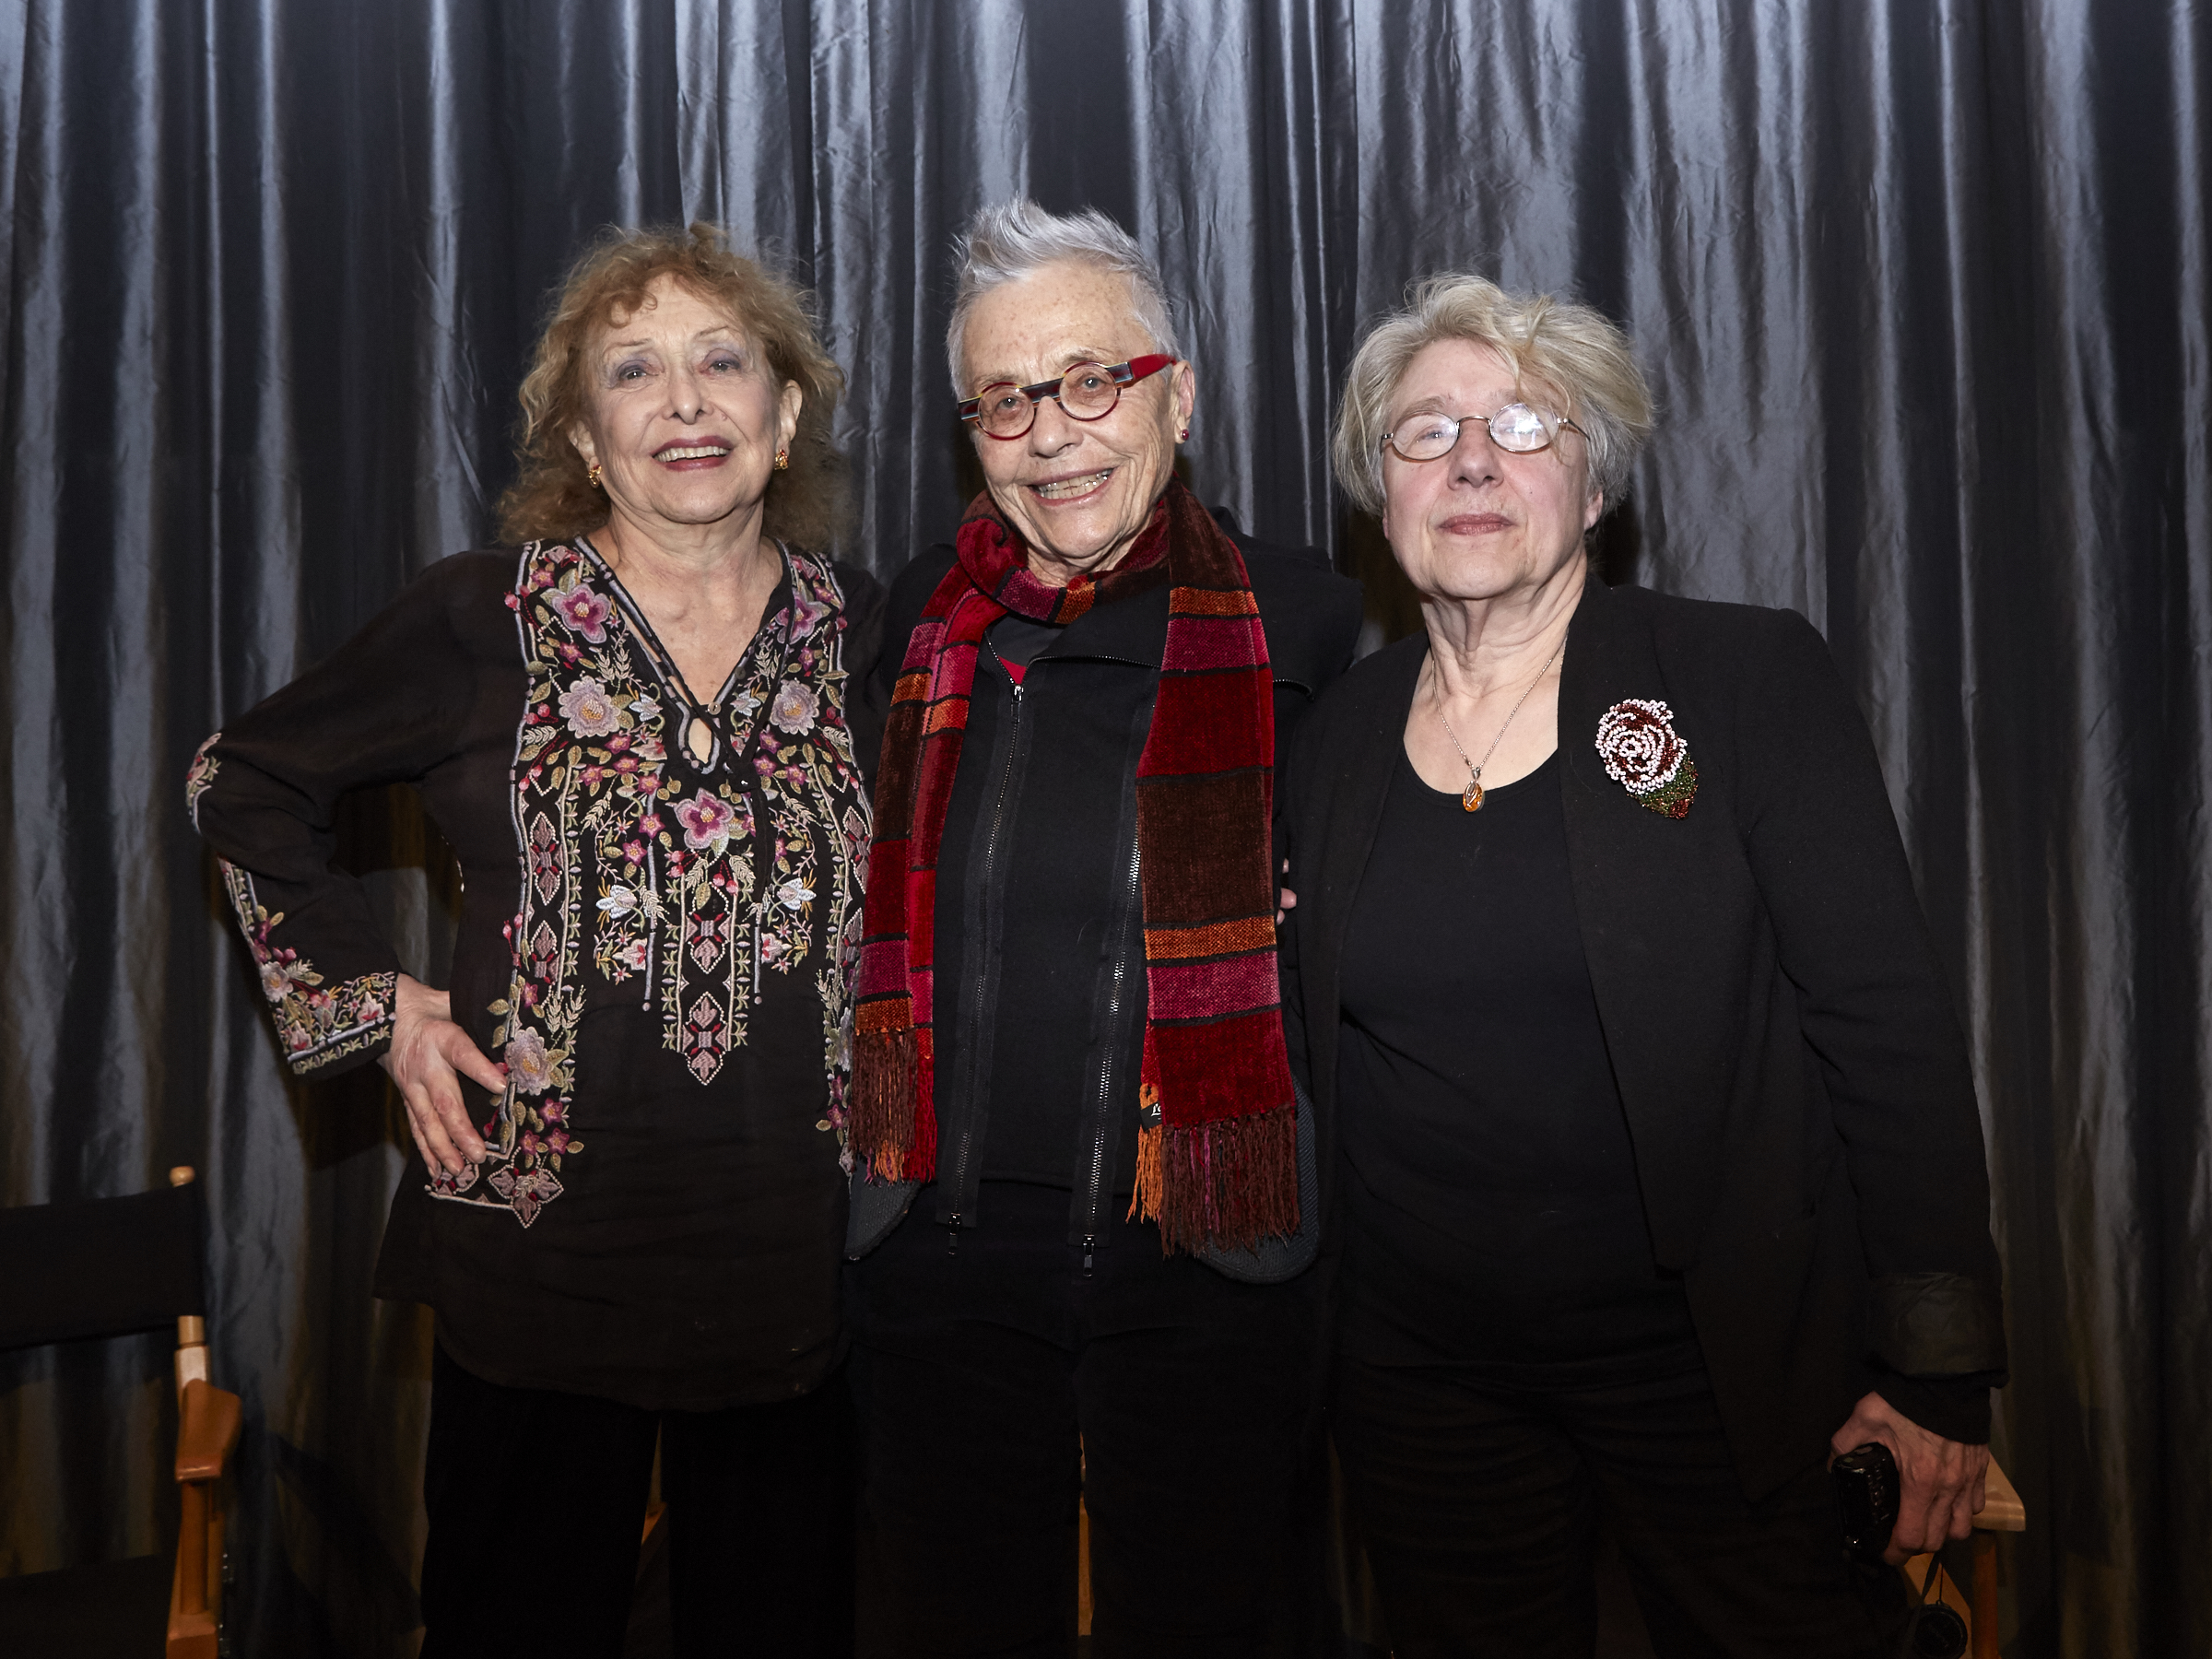  Carolee Scheenmann, Barbara Hammer, and Martha Rosler (Photo by Eric McNatt) 